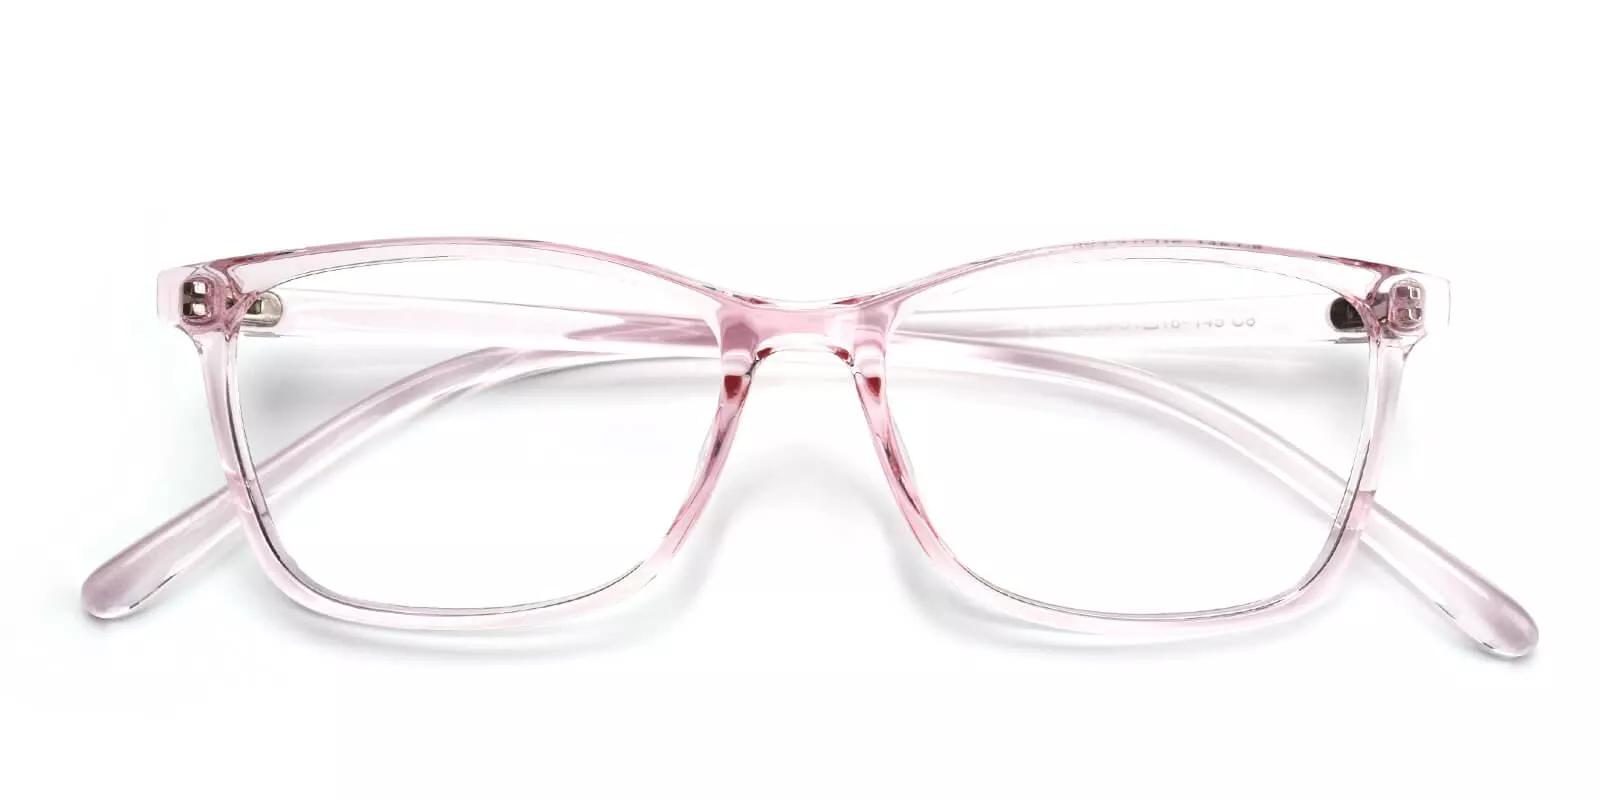 Davenport Light Weight Eyeglasses Pink Clear